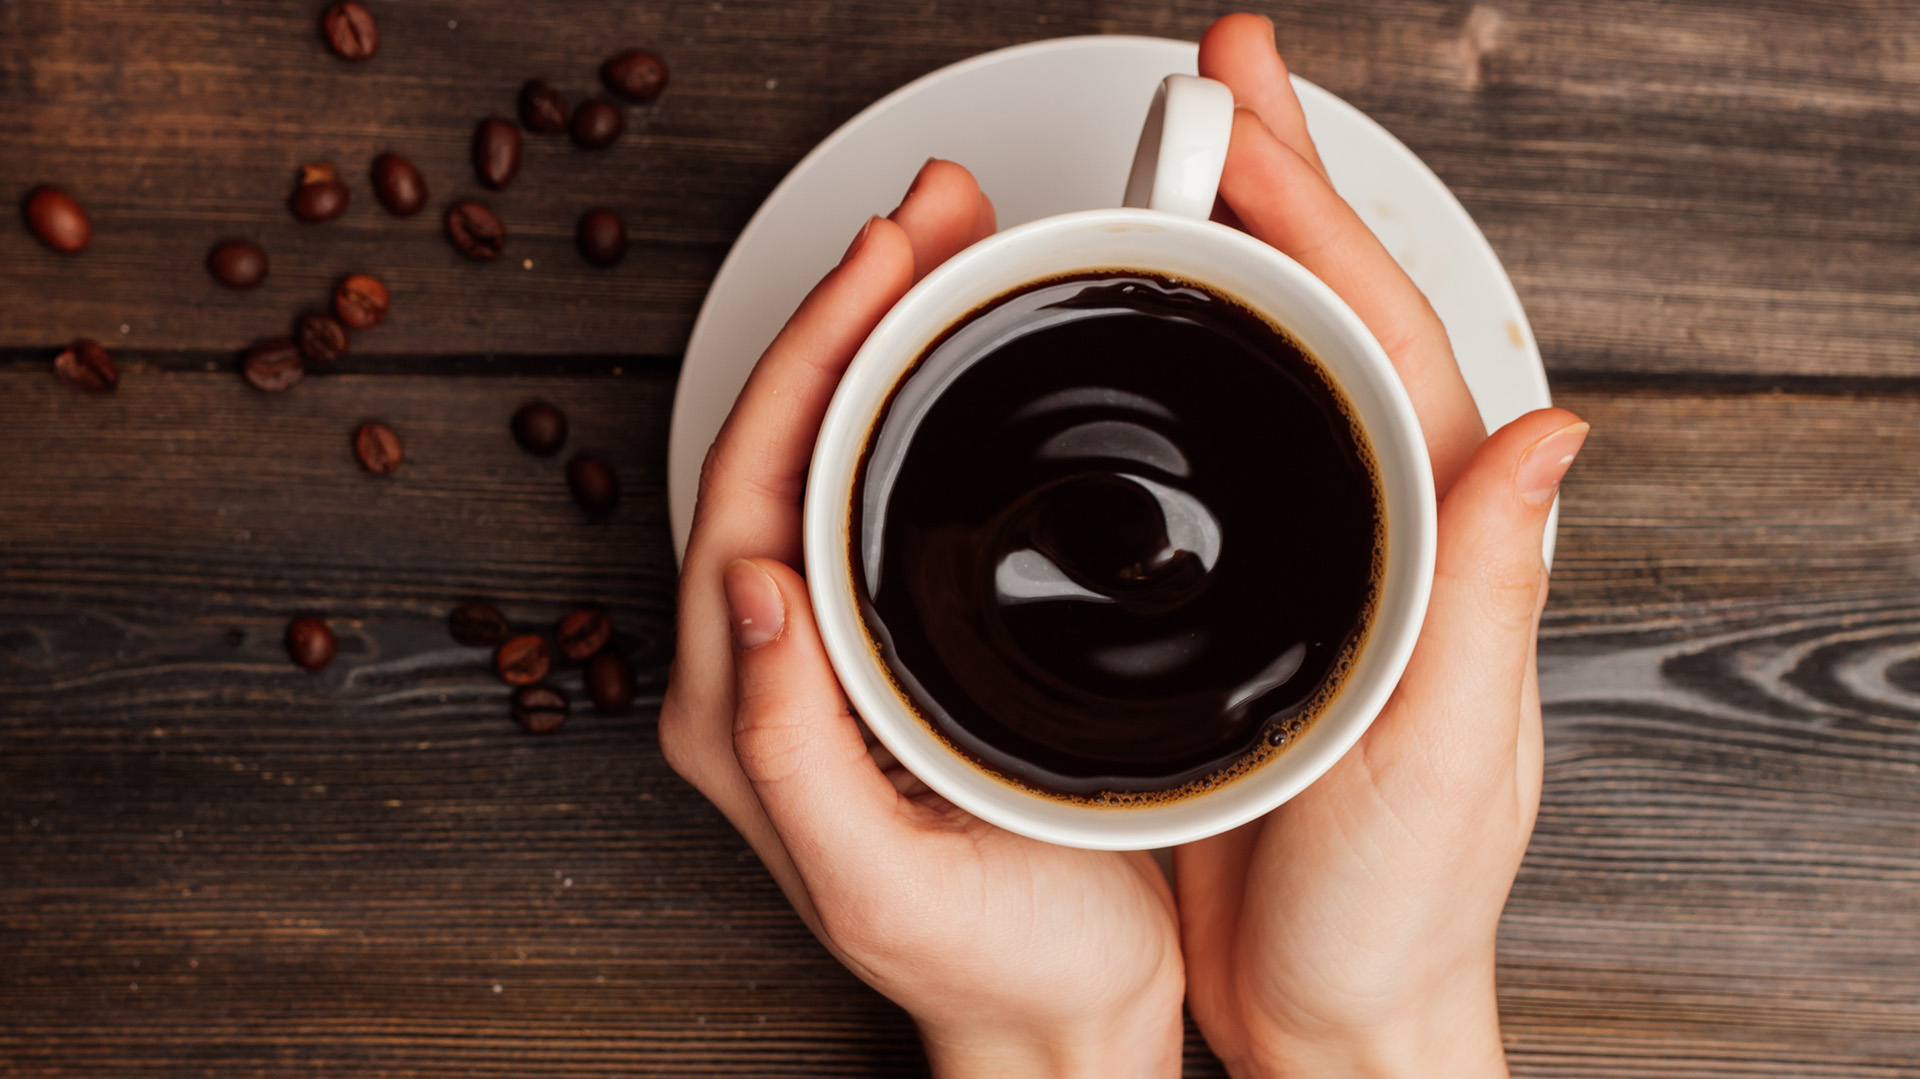 El riesgo de muerte en adultos que consumen café regularmente, varía según la cantidad de tazas consumidas al día